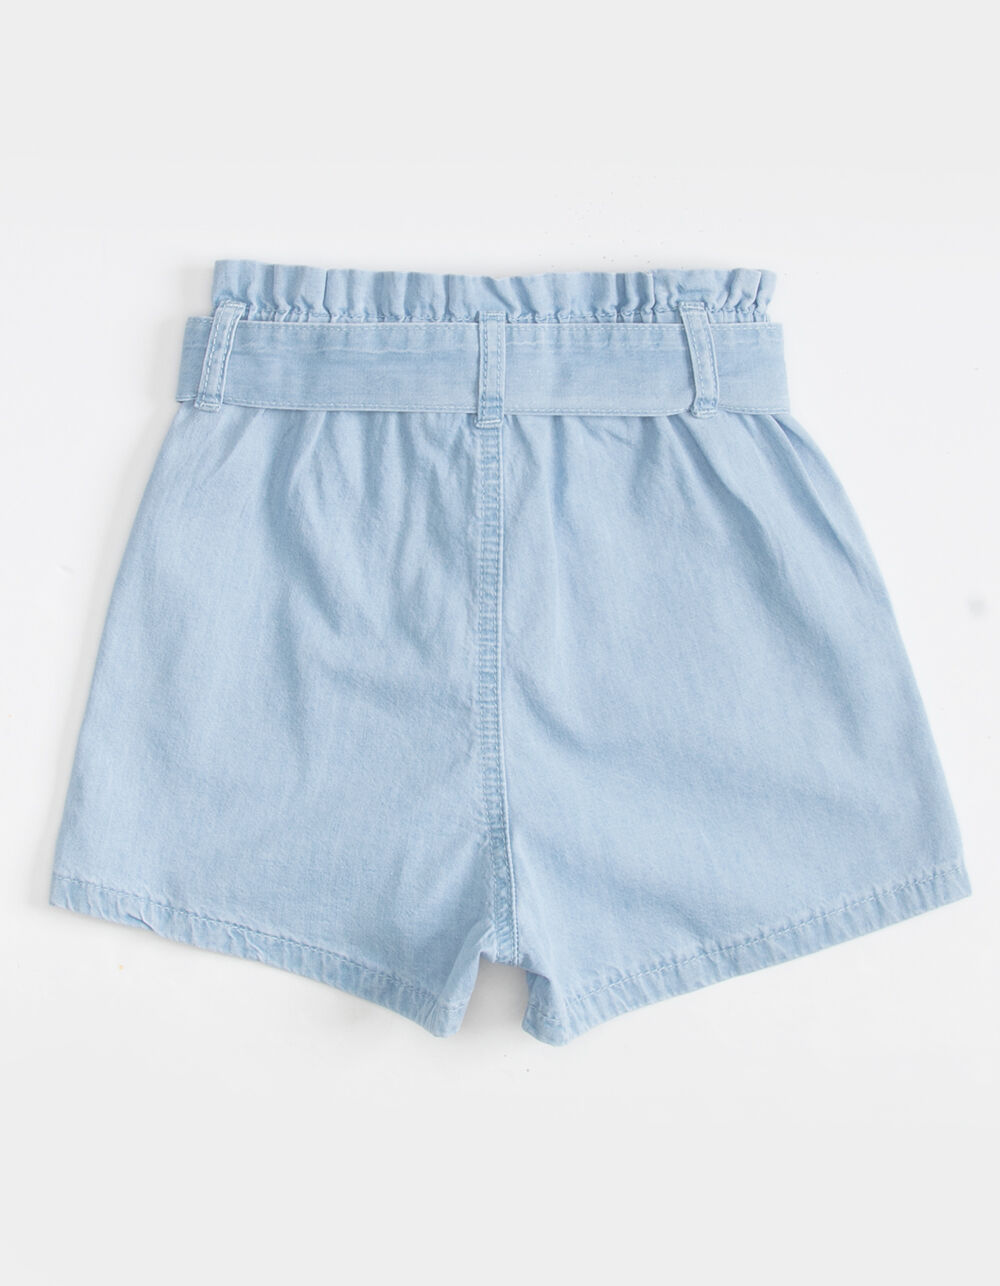 HAYDEN Belted Paperbag Girls Shorts - LIGHT WASH | Tillys